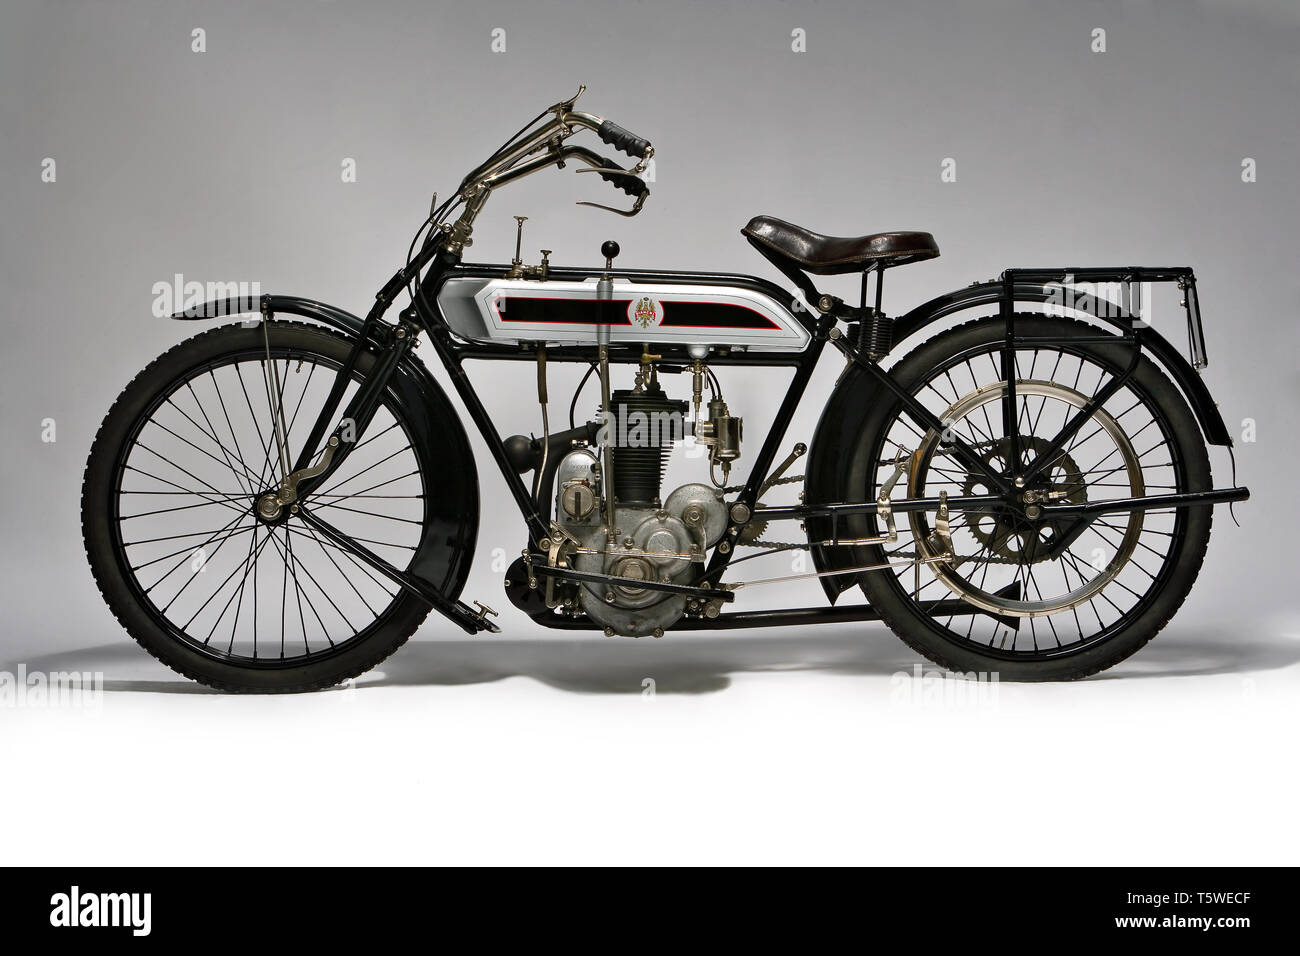 Moto d'epoca Bianchi C75 ein fabbrica: Bianchi modello: C75A fabbricata in: Italien - Milano Anno: 1914 condizioni: restaurata cilin Stockfoto